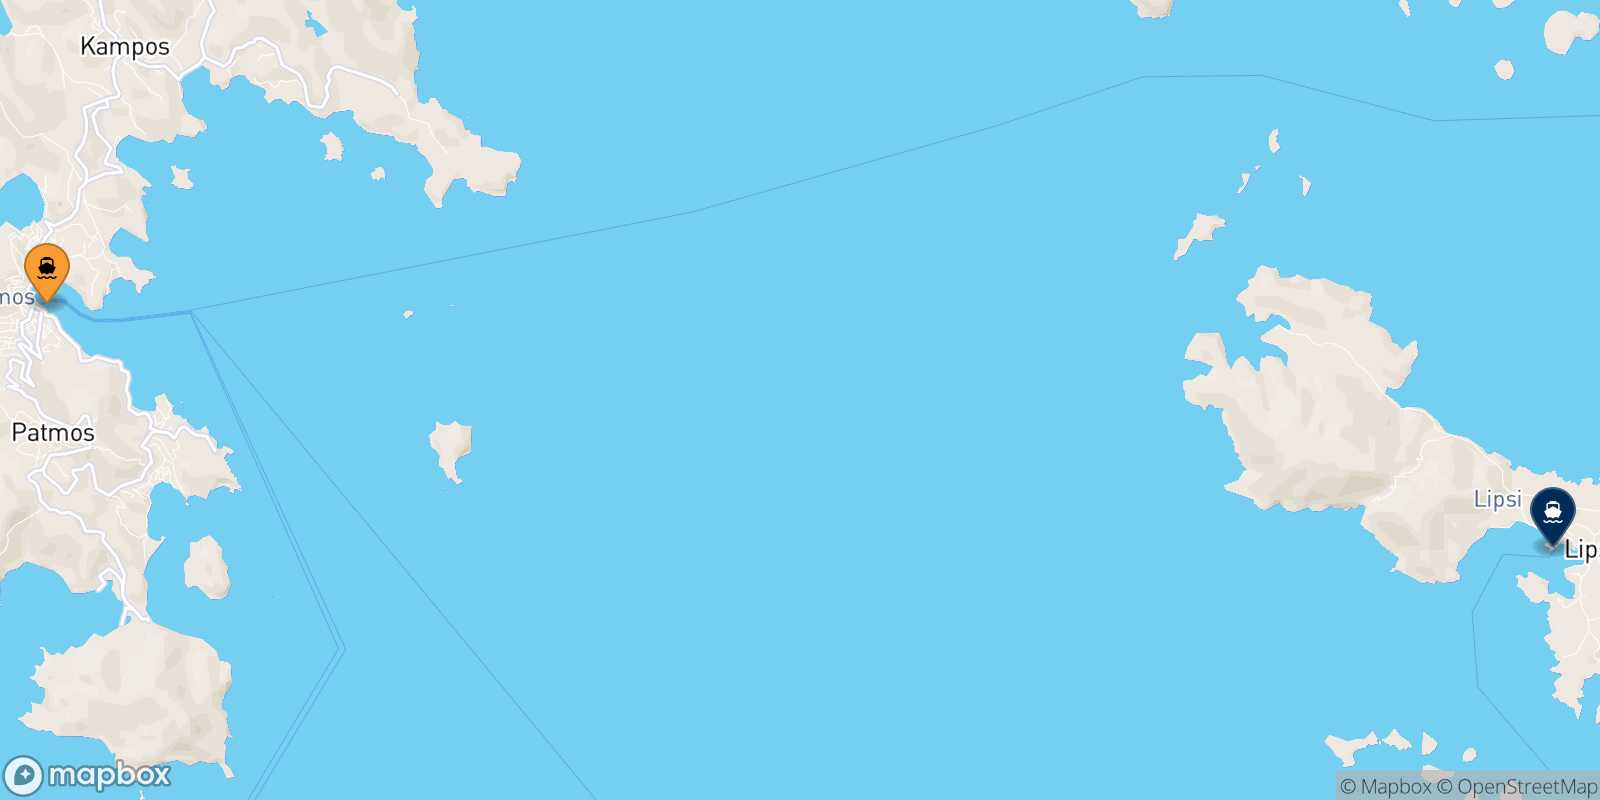 Mapa de la ruta Patmos Lipsi